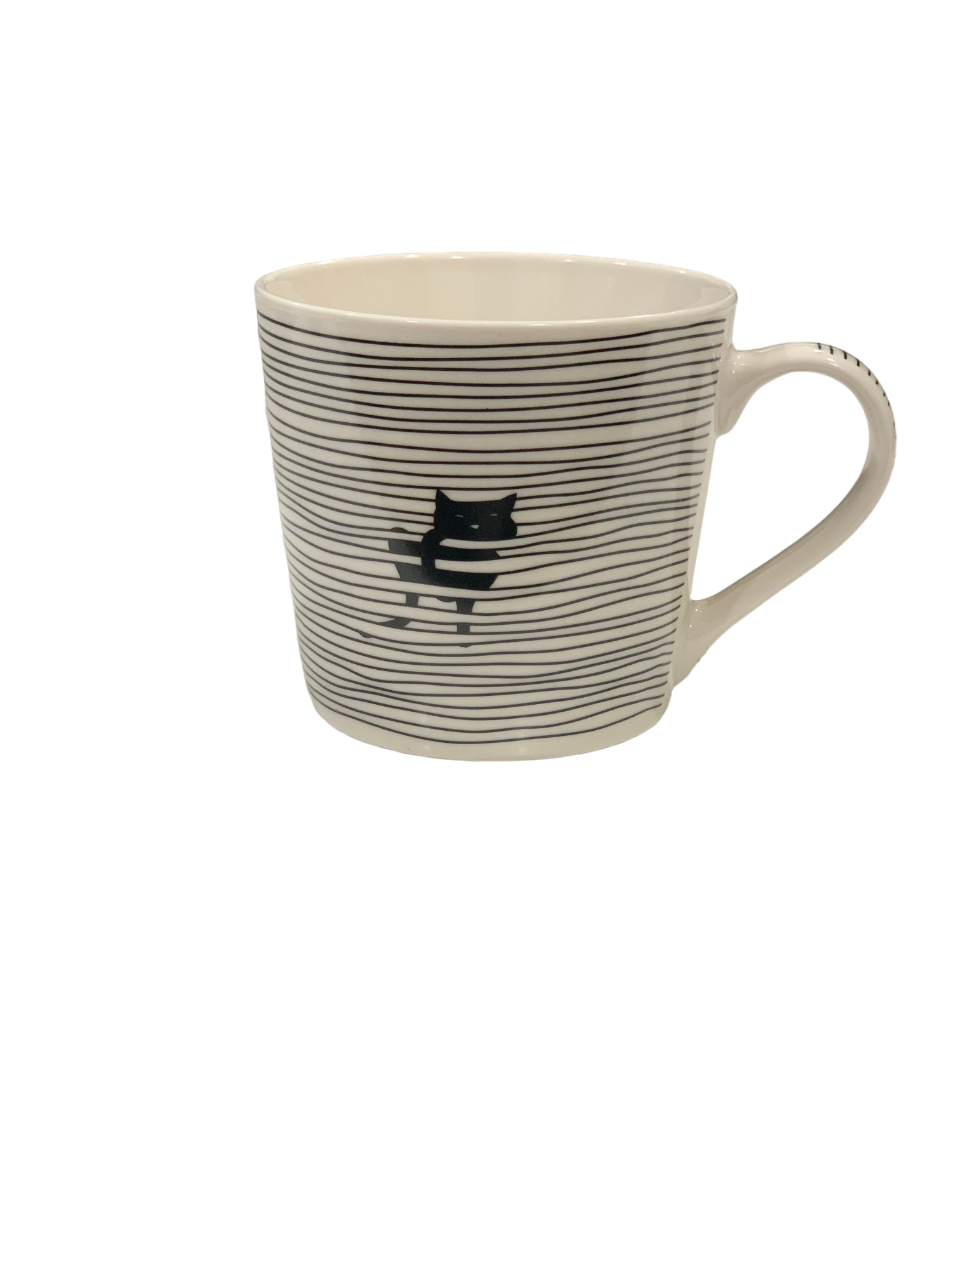 A Cat Between the Lines Mug